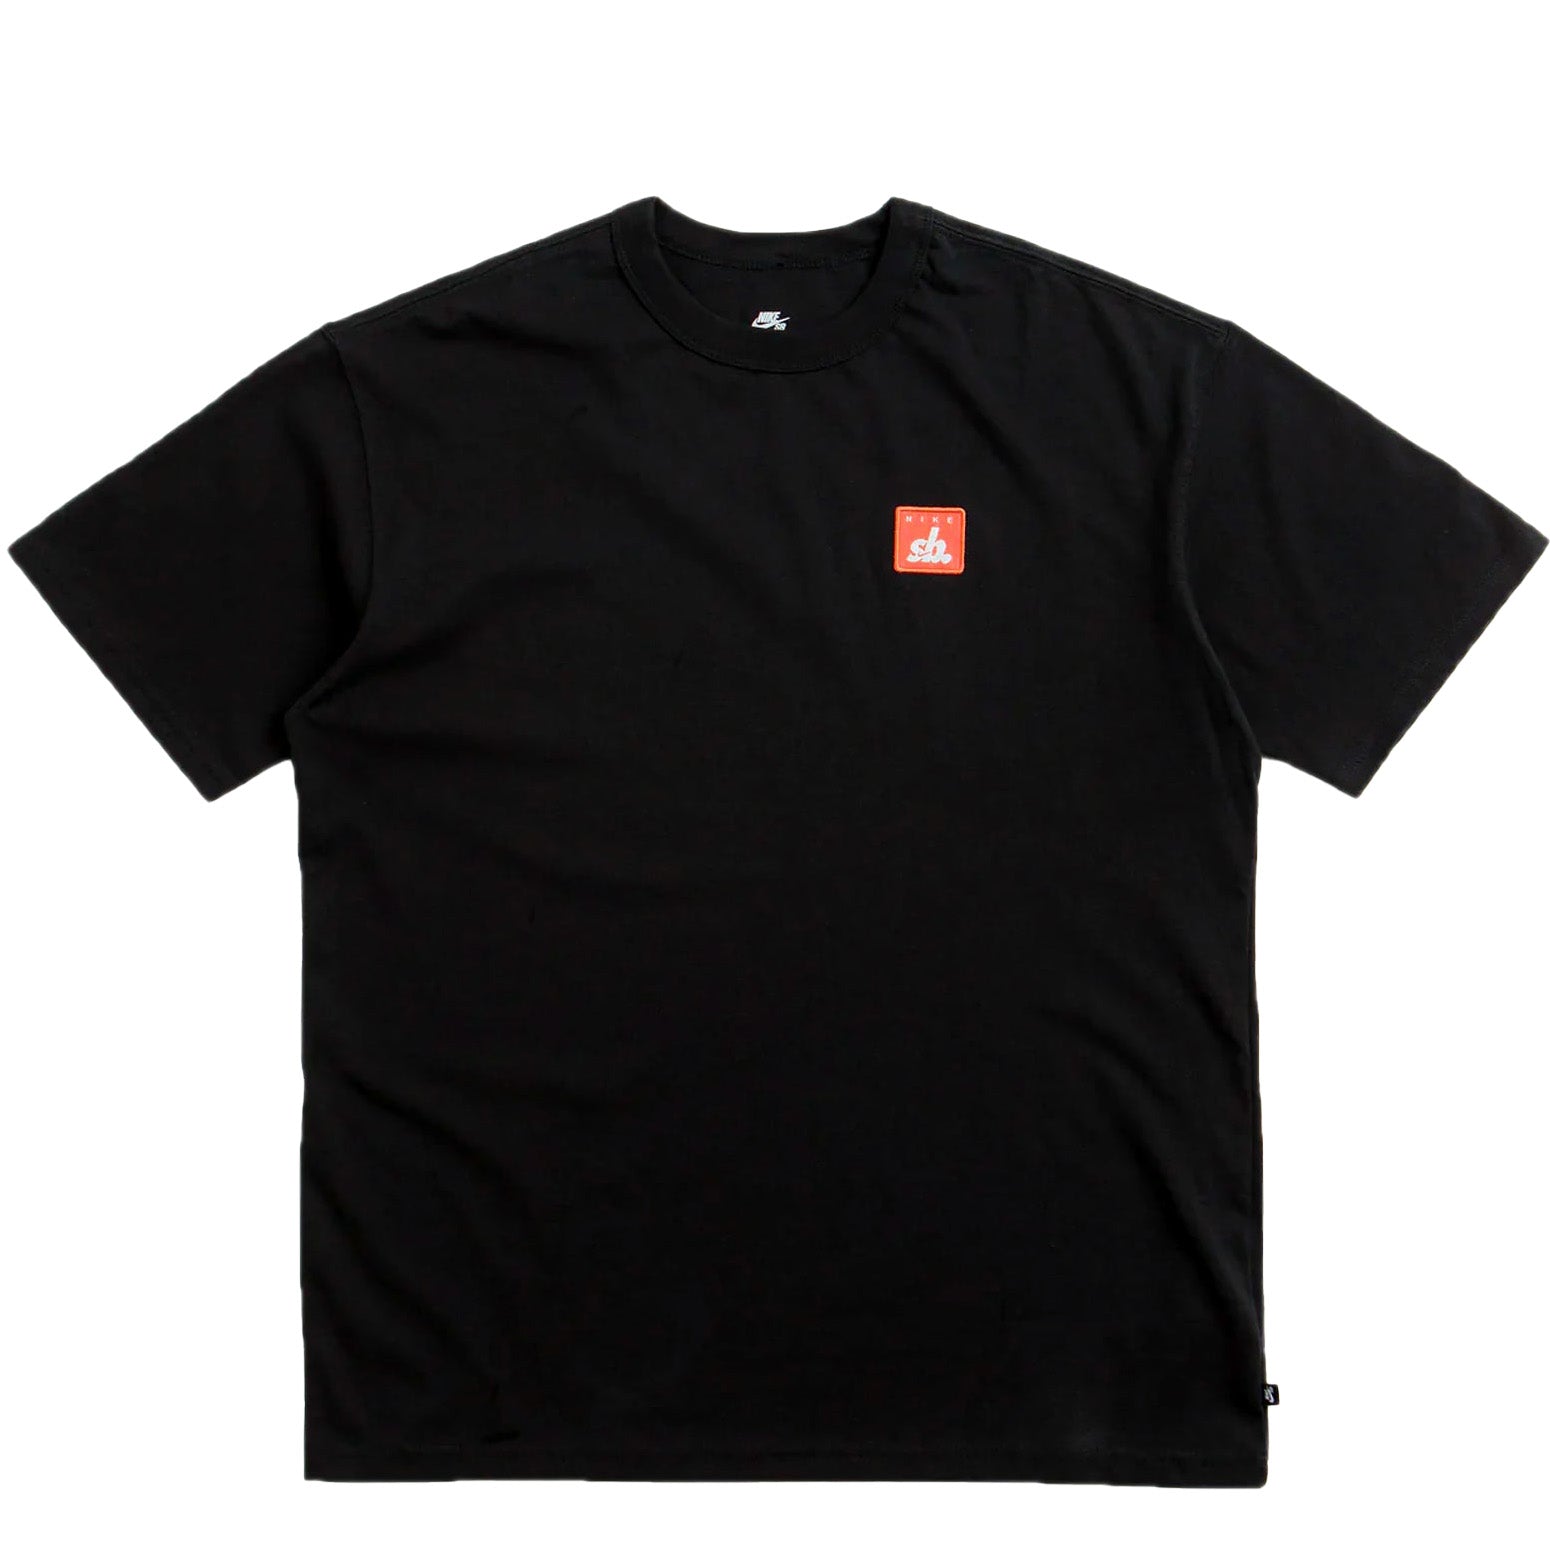 Nike SB Patch T-Shirt Black